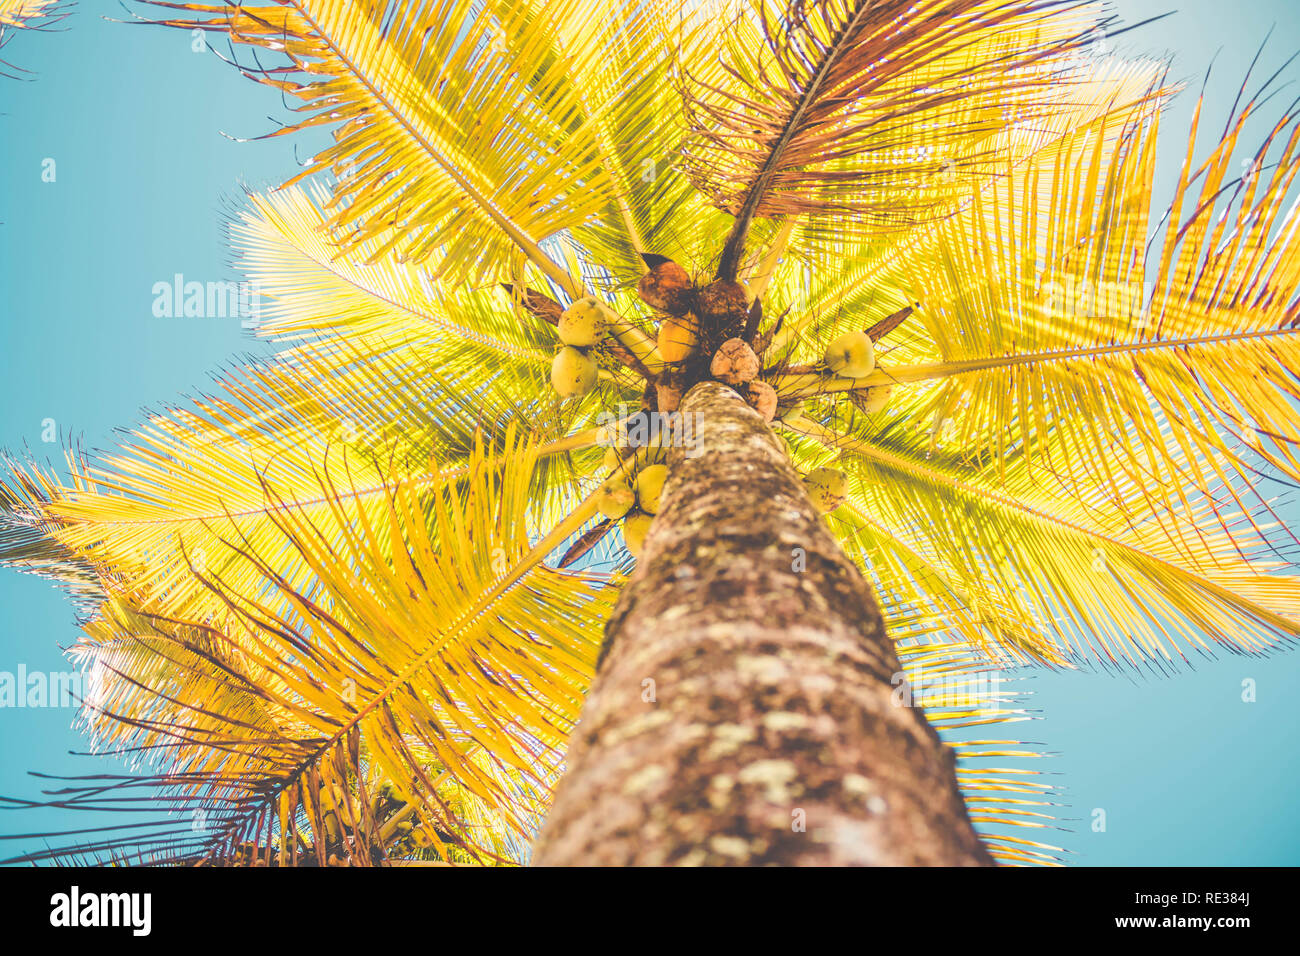 Coconuts on coconut tree (Cocos nucifera) Stock Photo